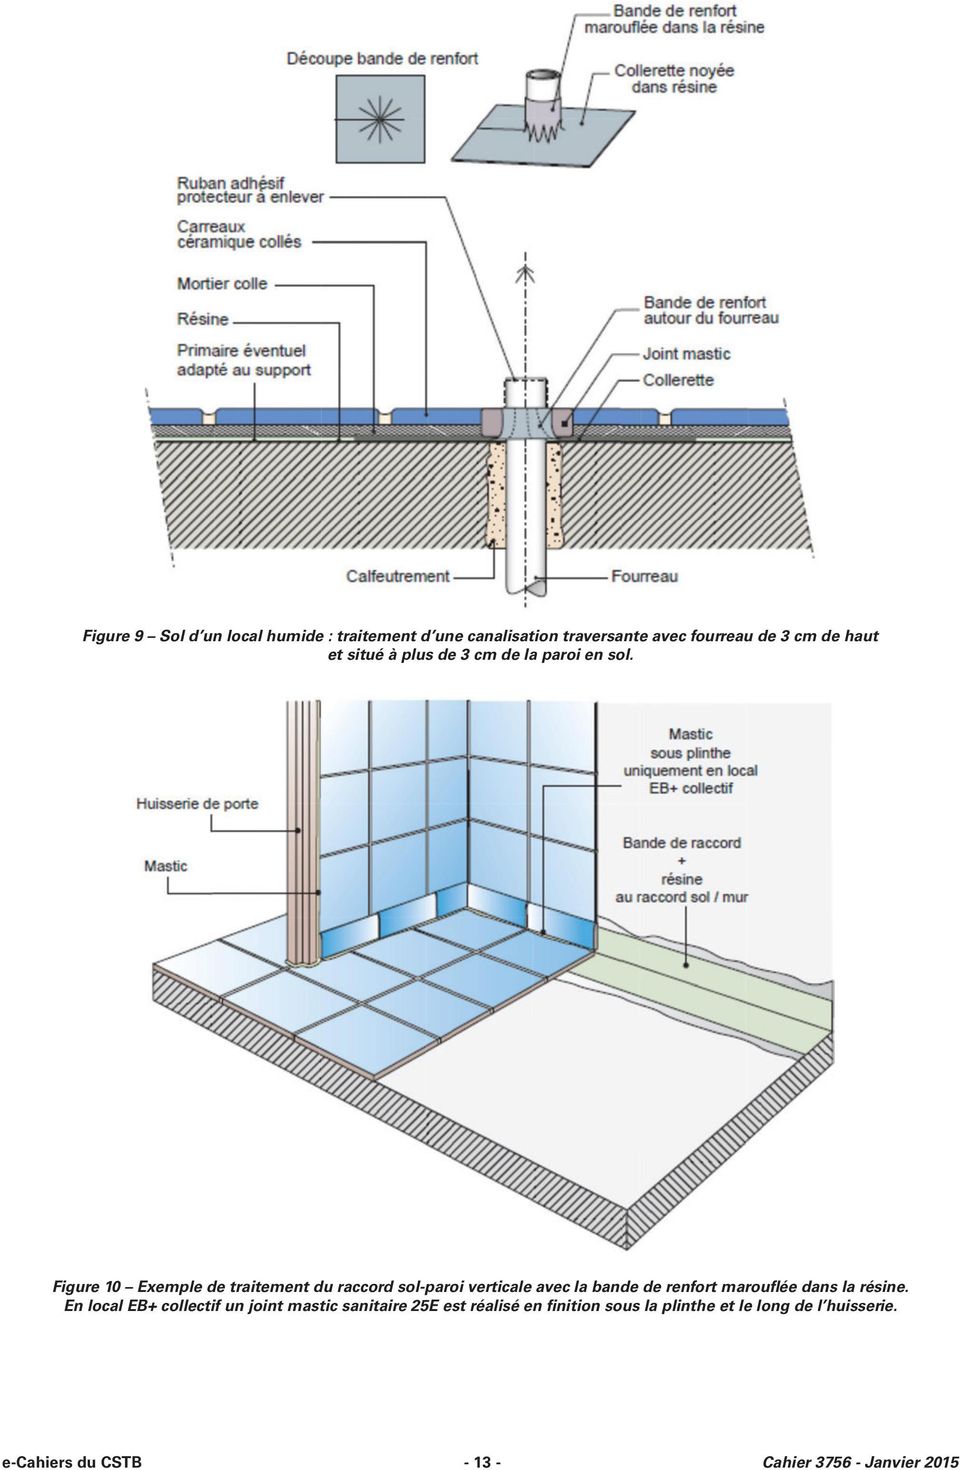 Figure 10 Exemple de traitement du raccord sol-paroi verticale avec la bande de renfort marouflée dans la